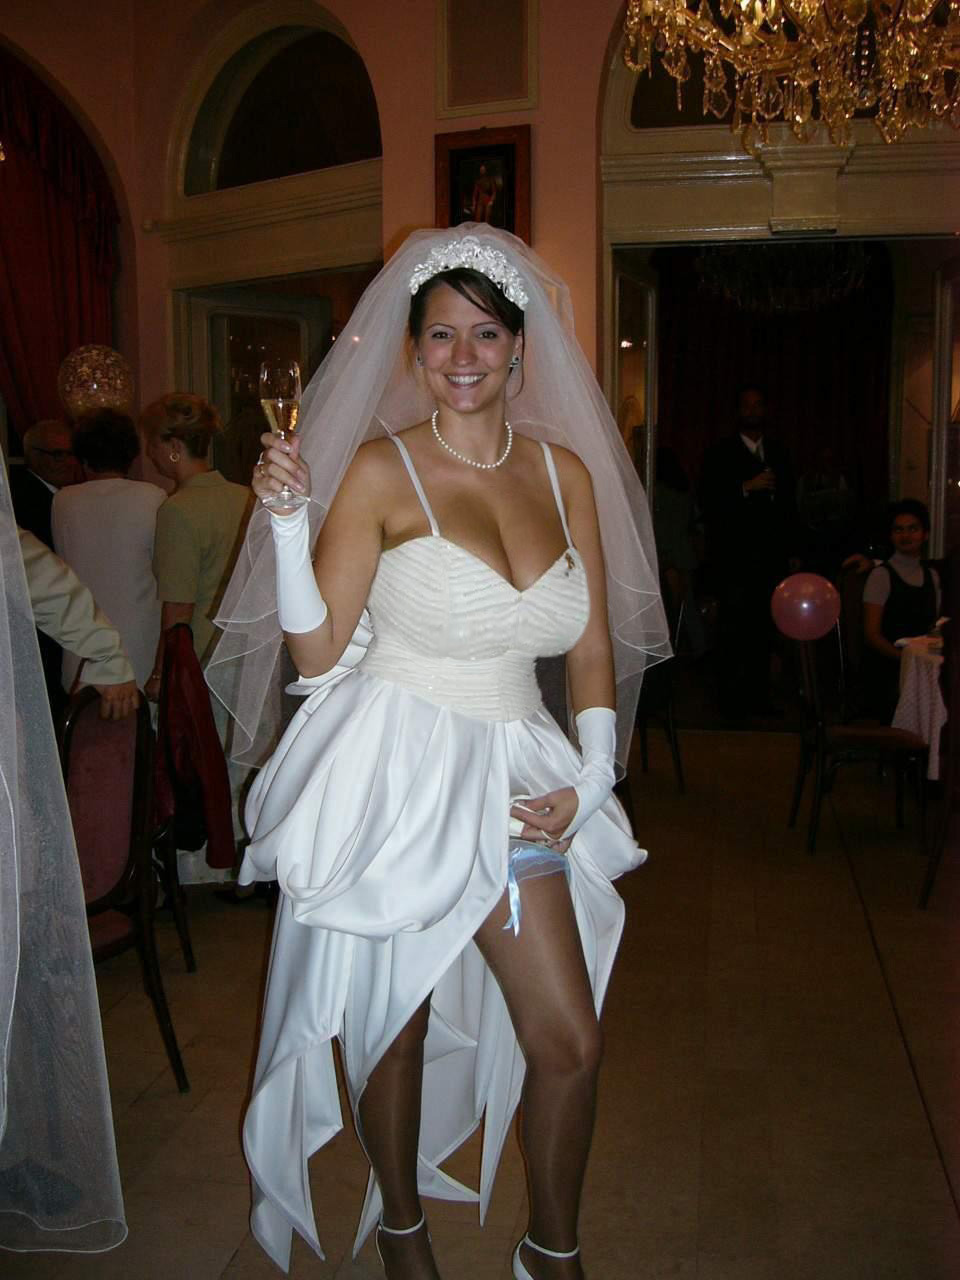 Busty bride tits wedding dress